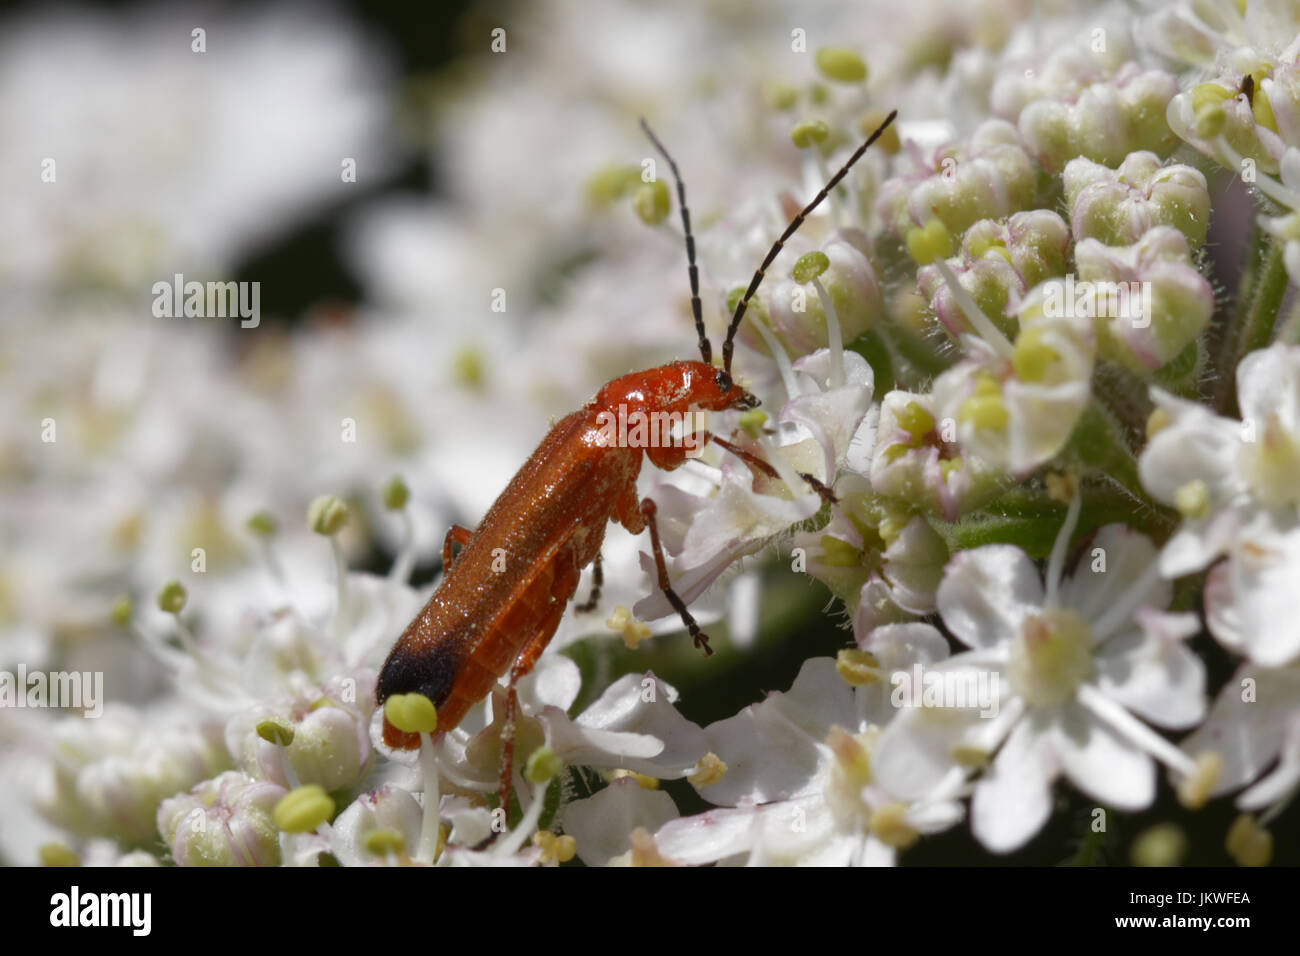 Questa foto è una Rhagonycha fulva beetle su un fiore Foto Stock